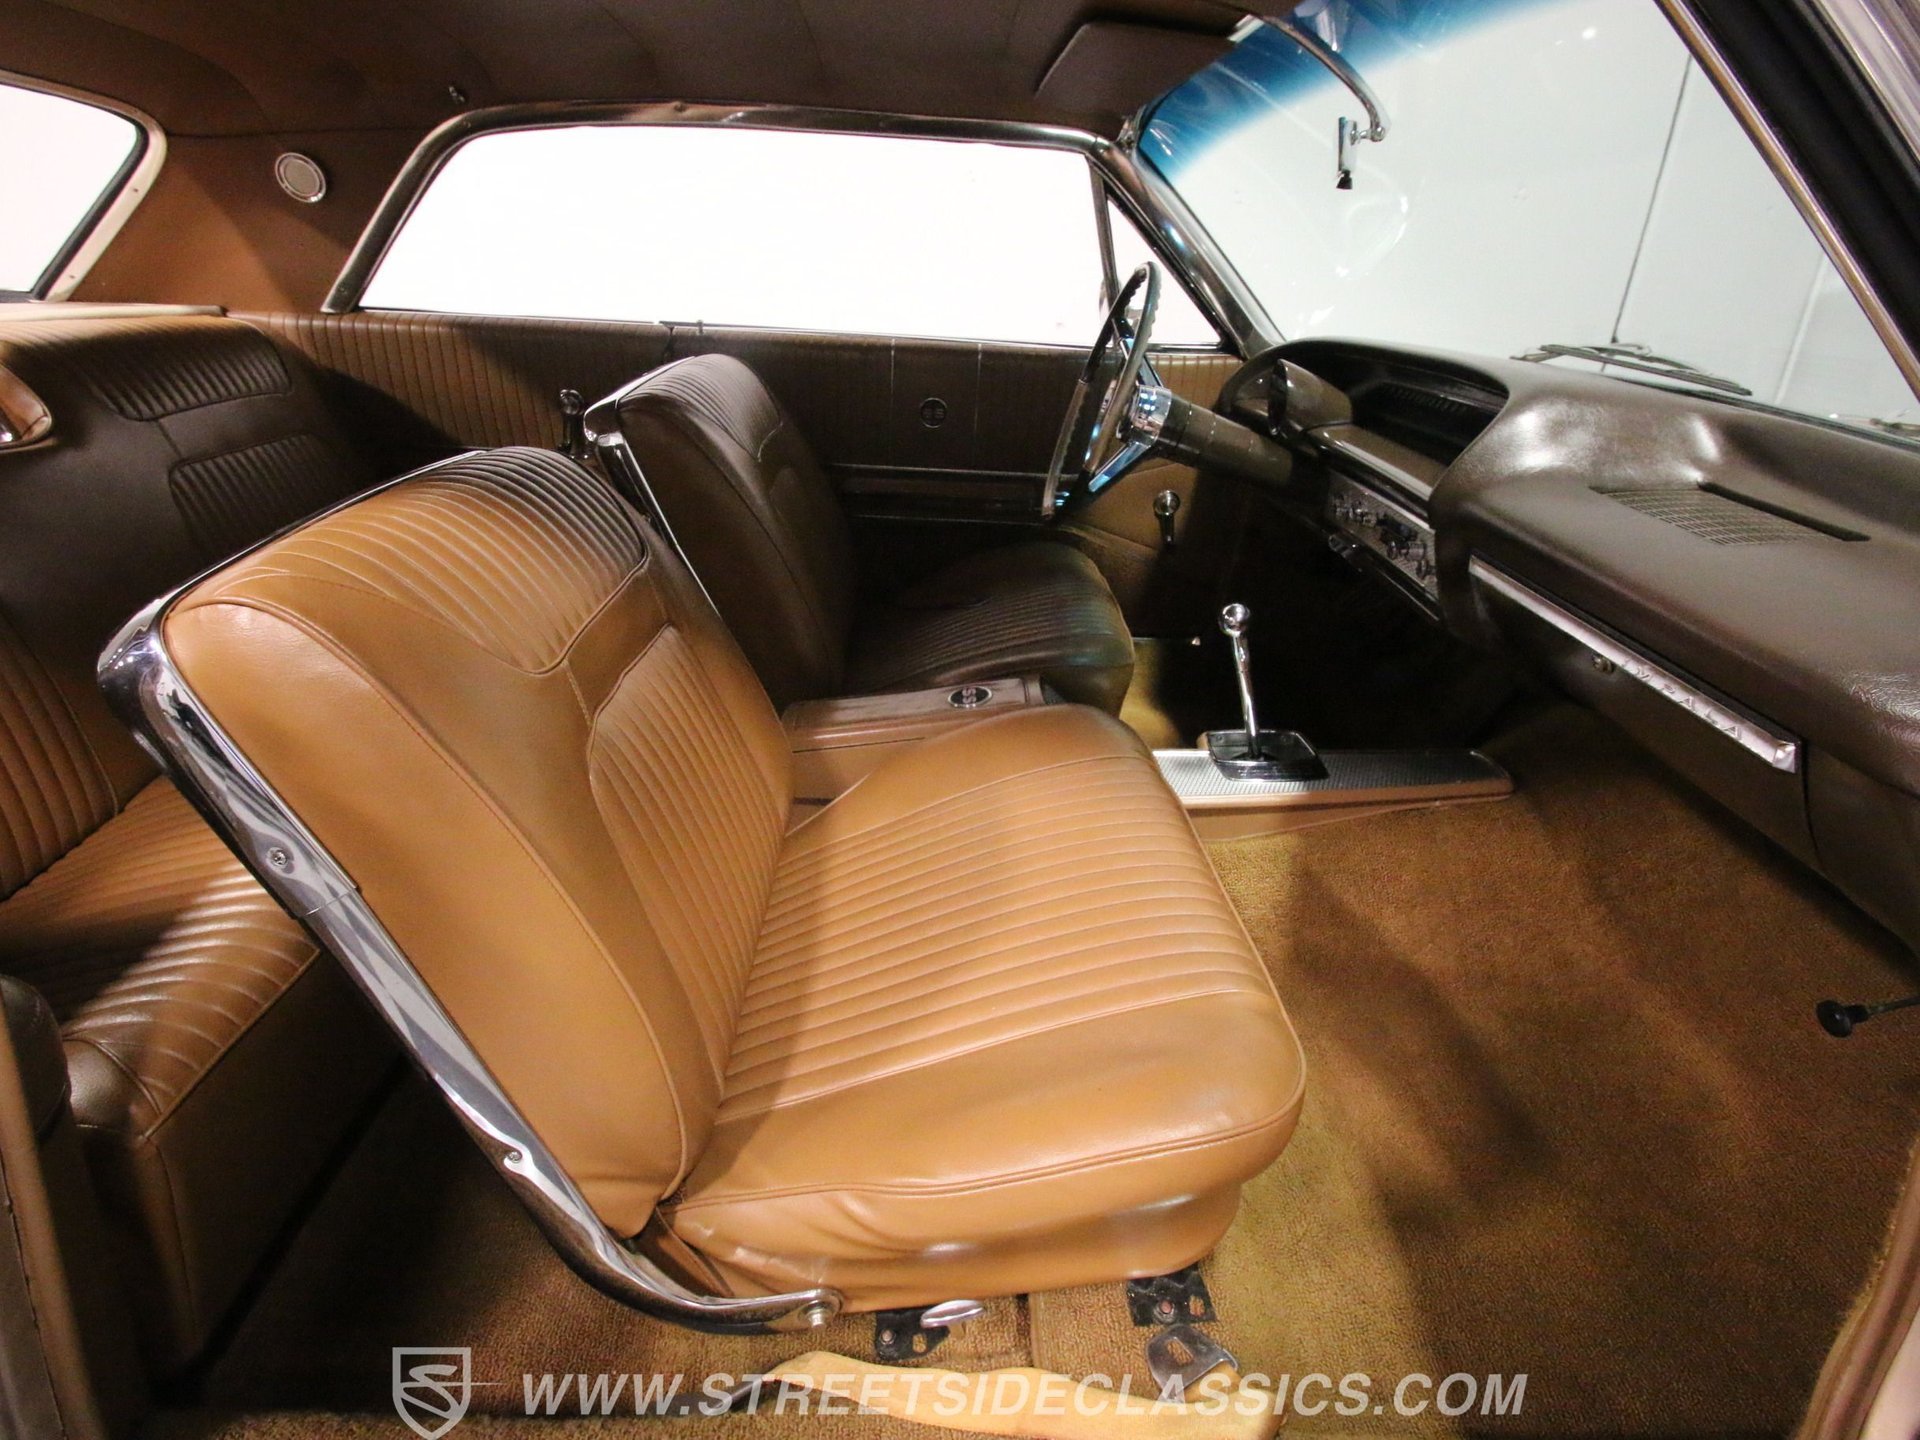 1964 Chevrolet Impala Streetside Classics The Nation S